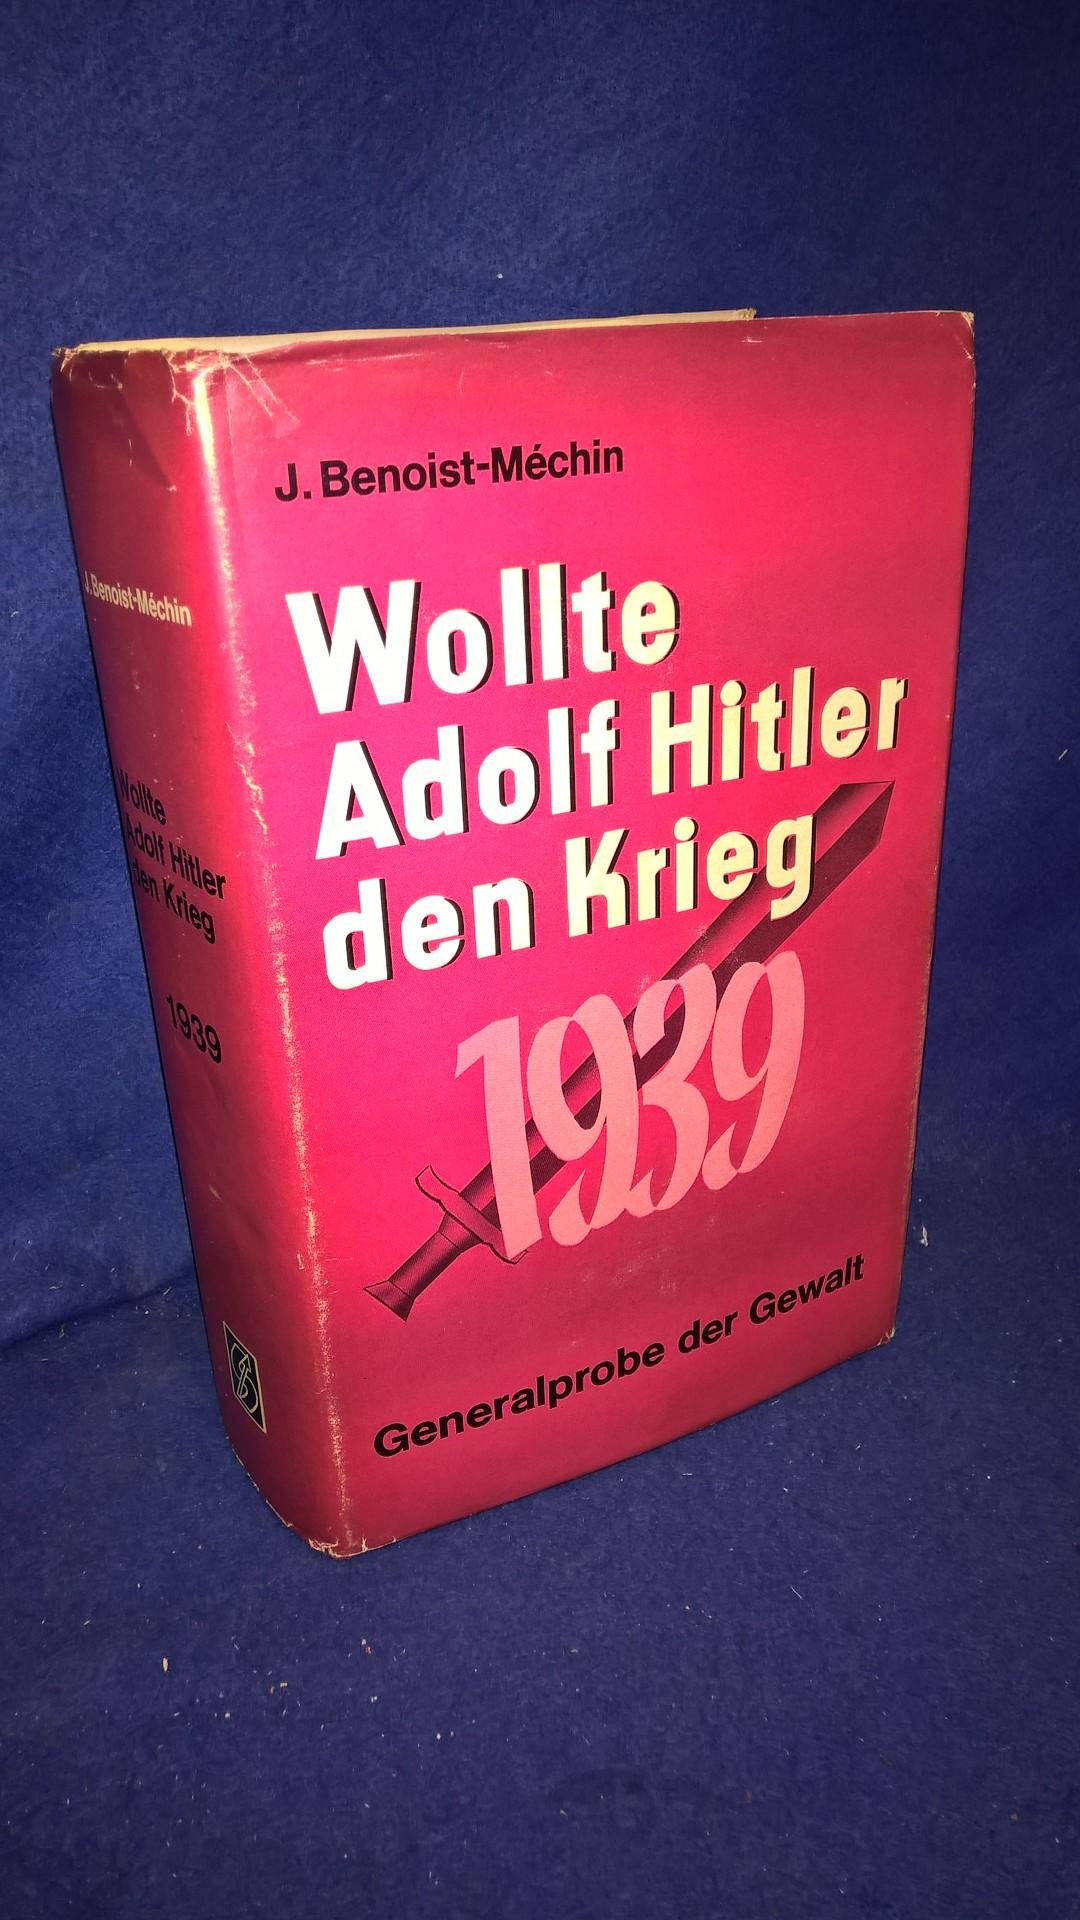 Wollte Adolf Hitler den Krieg 1939 - Generalprobe der Gewalt. 1. Aufl